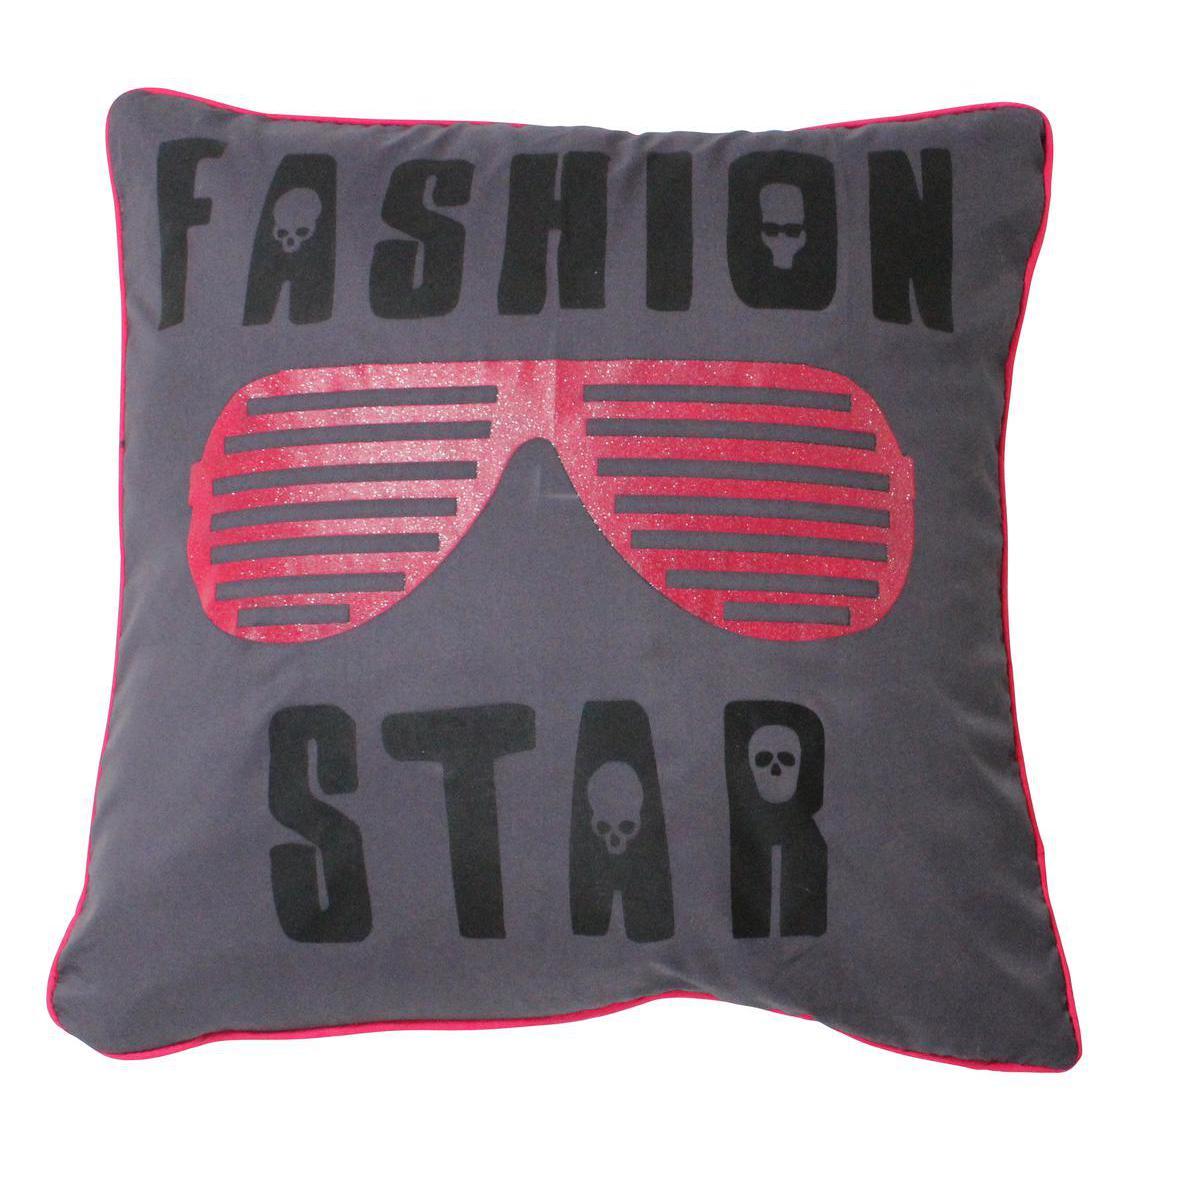 Coussin fashion - Polyester - 40 x 40 cm - Gris noir et rose